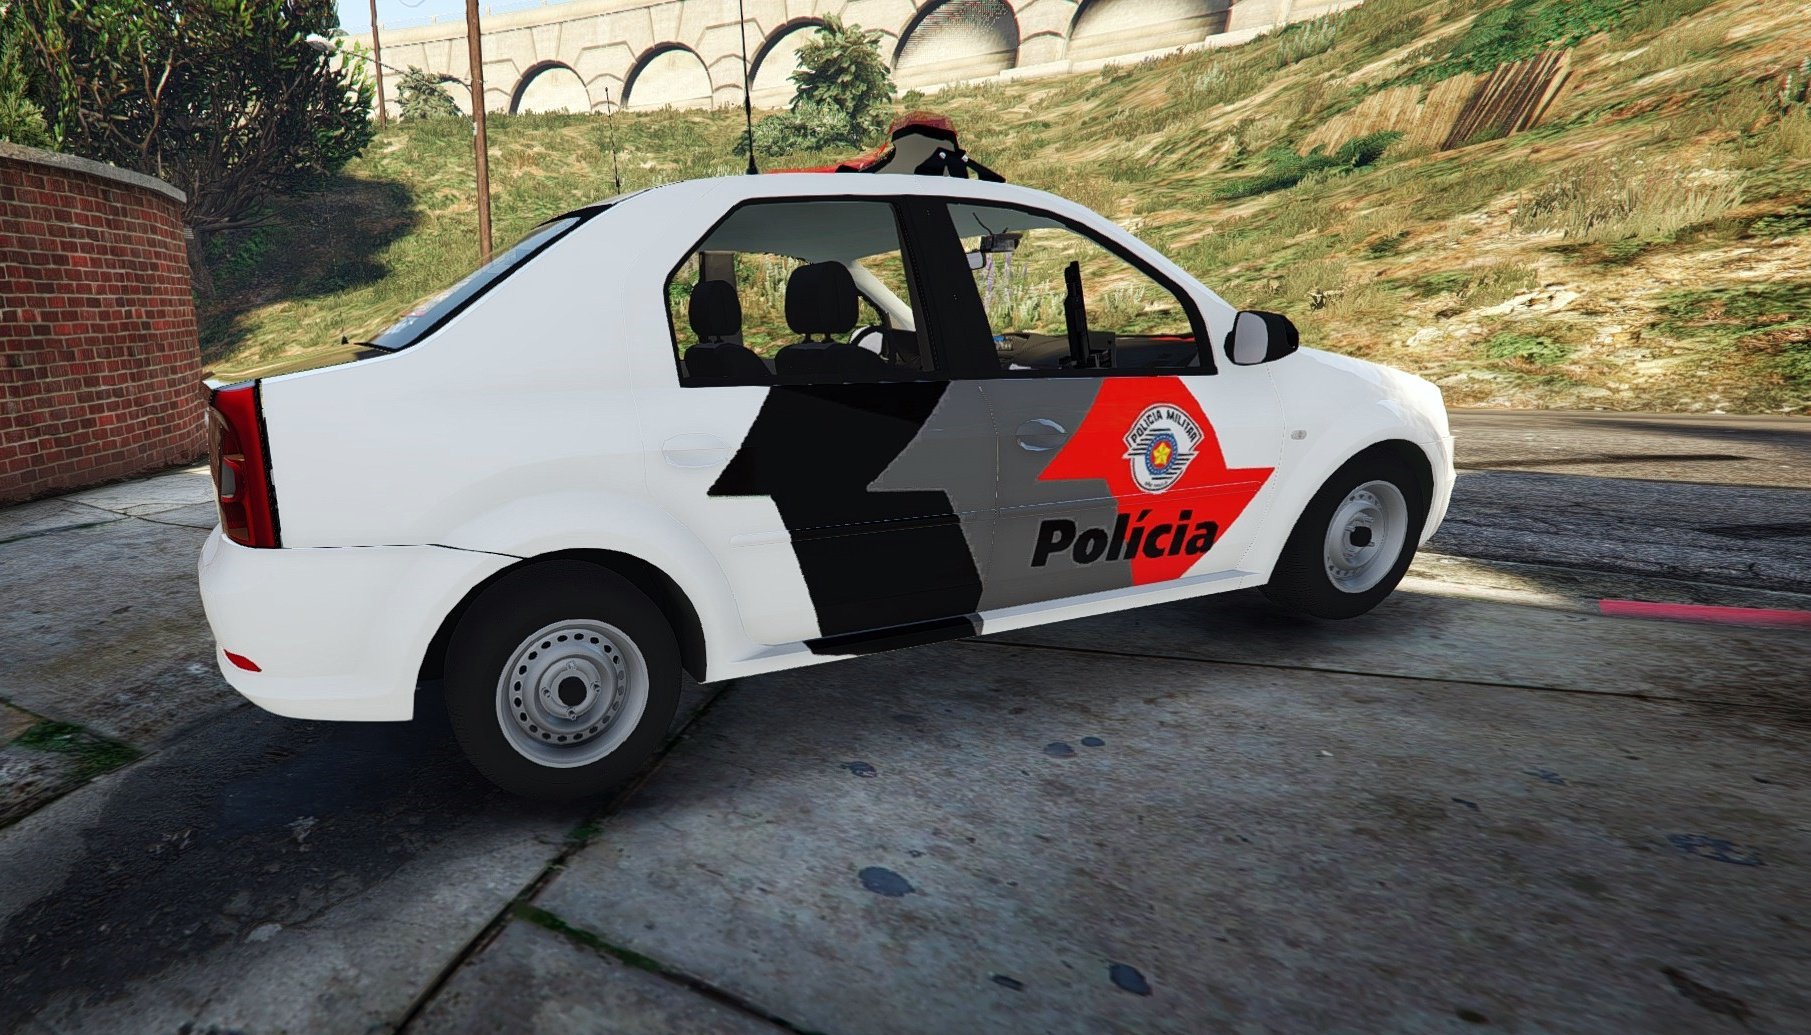 GTA V : MOD POLICIA LSPDFR, BLITZ em Primeira pessoa com Renault Logan  PMSP